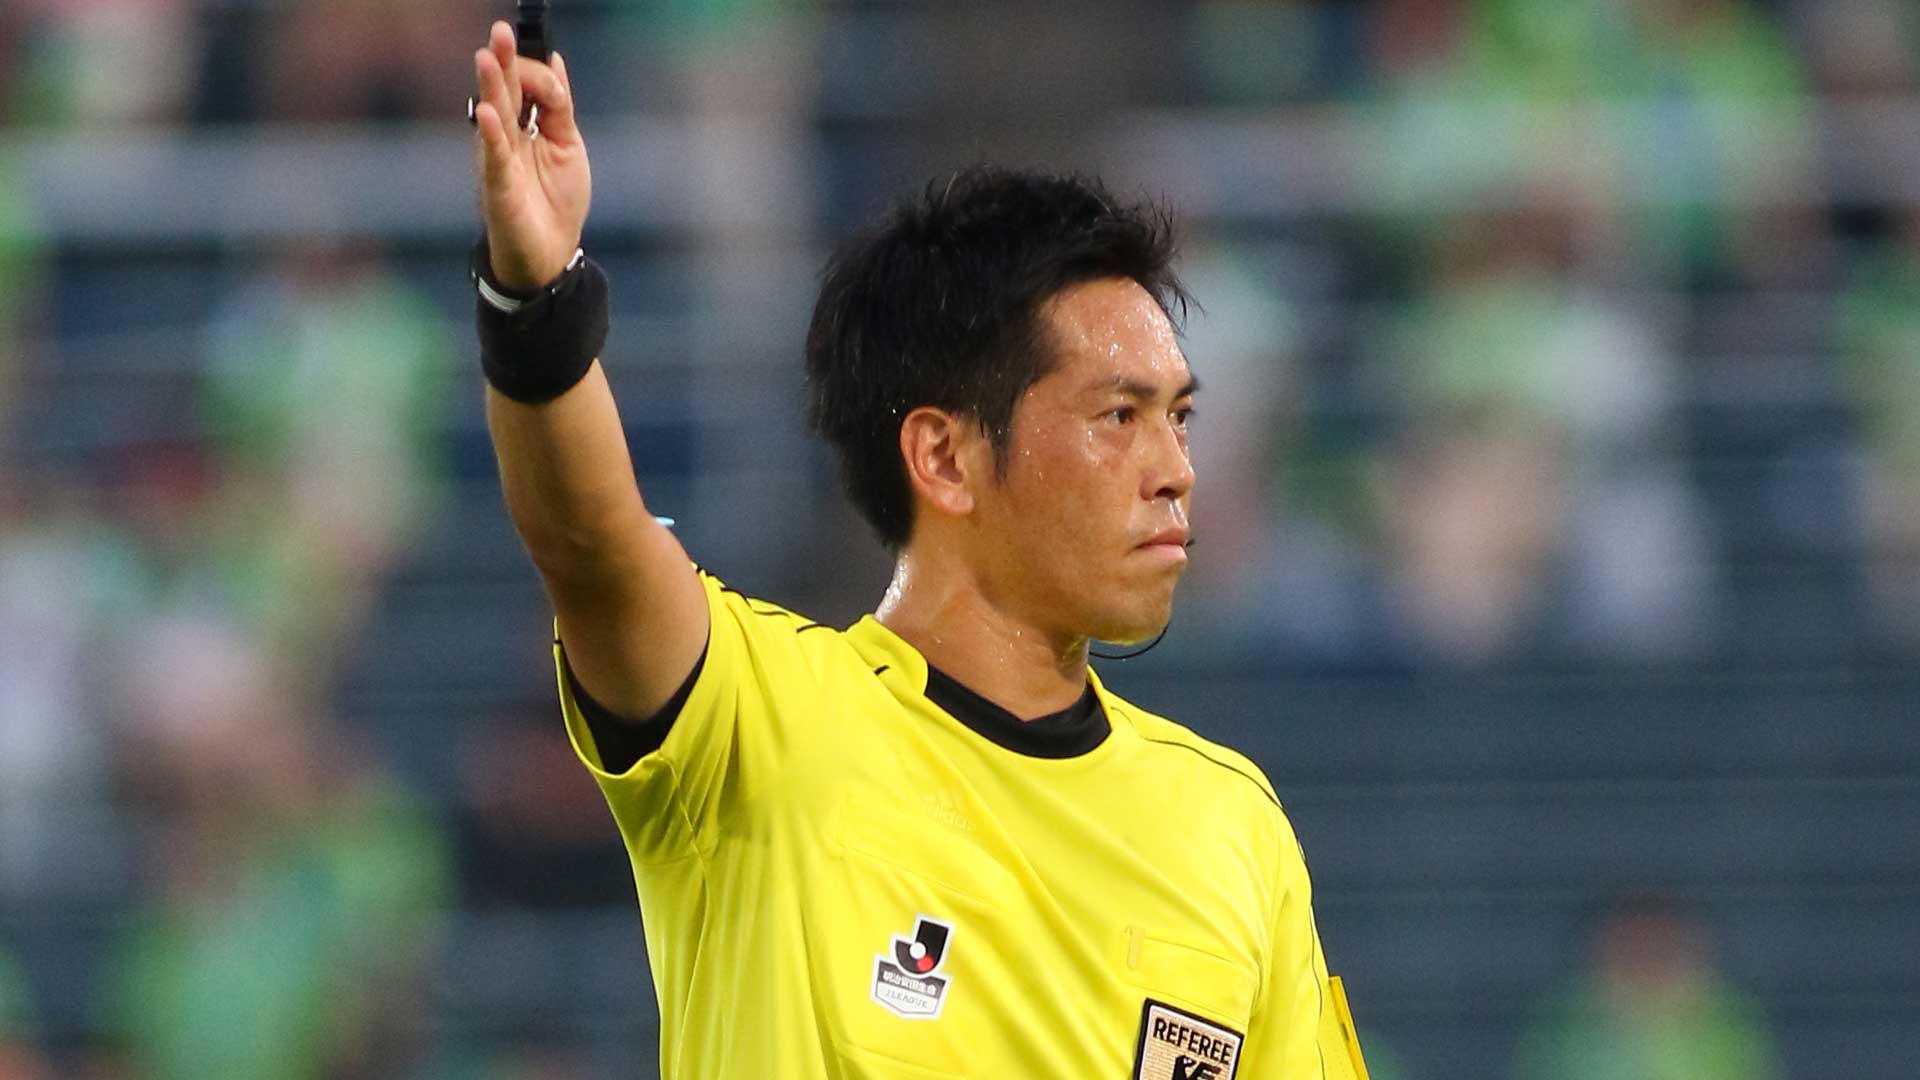 千葉対水戸で主審がユニフォームを黄緑から赤に変更 10分遅れで試合開始 Goal Com 日本